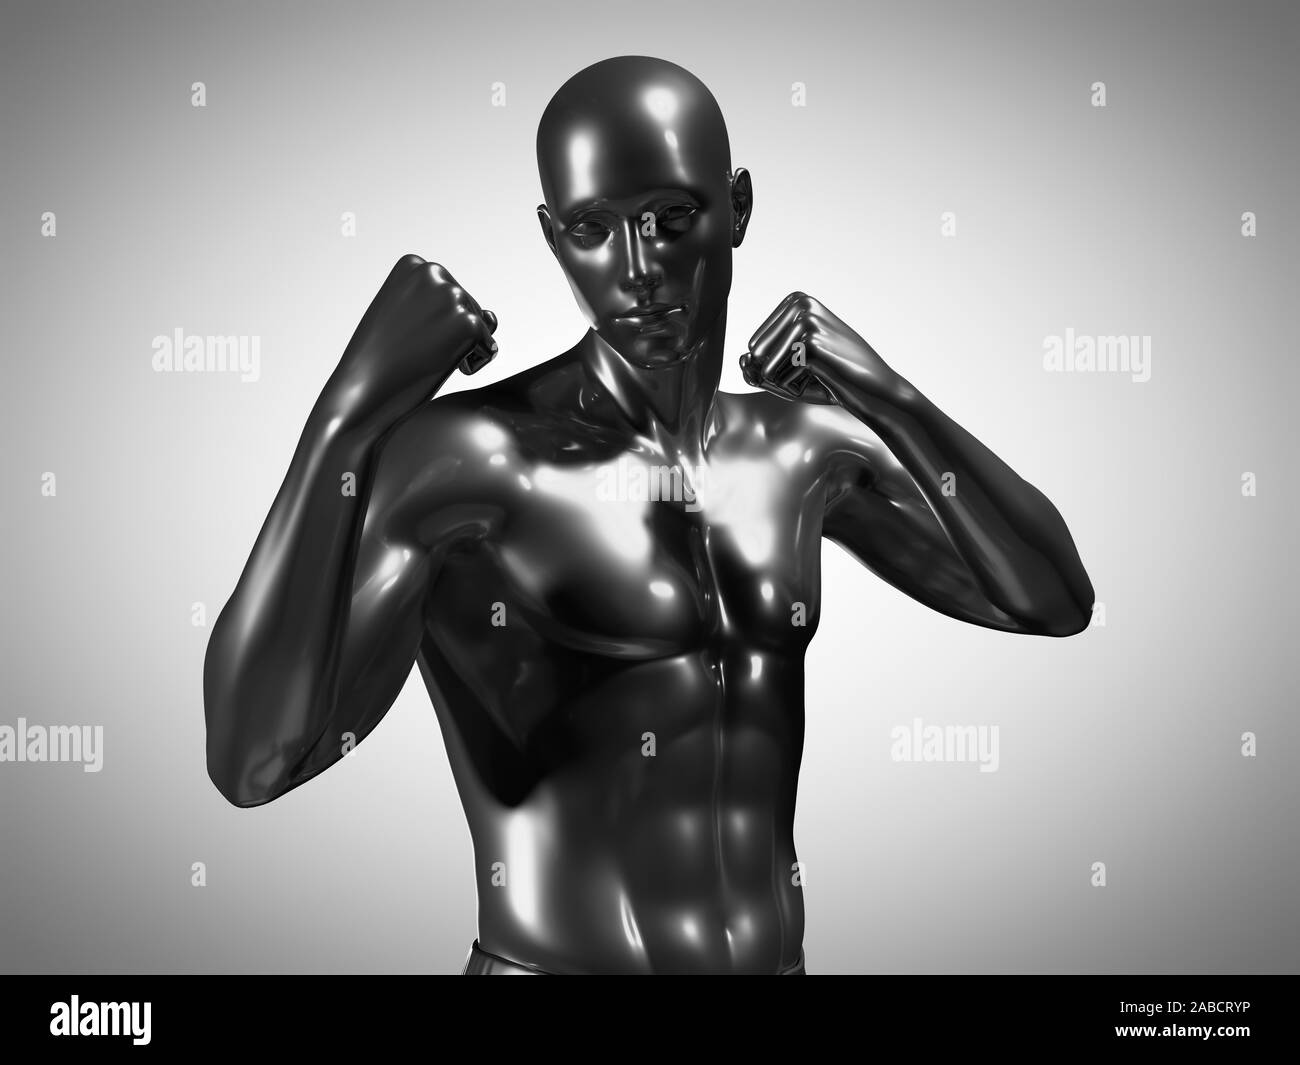 Rendu 3D précis médicalement illustration d'un homme métallique dans une pose de boxe Banque D'Images